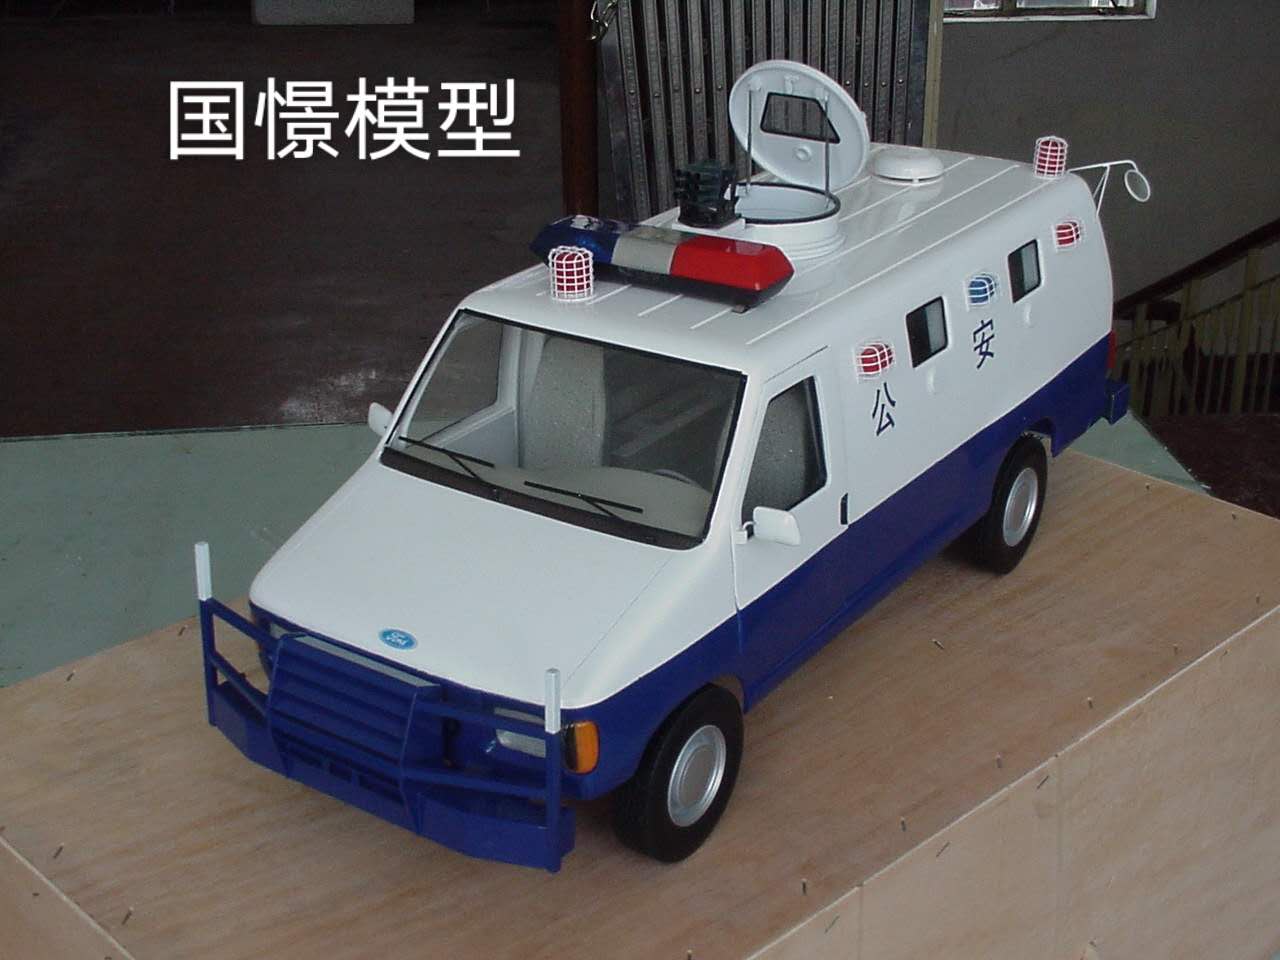 巴东县车辆模型